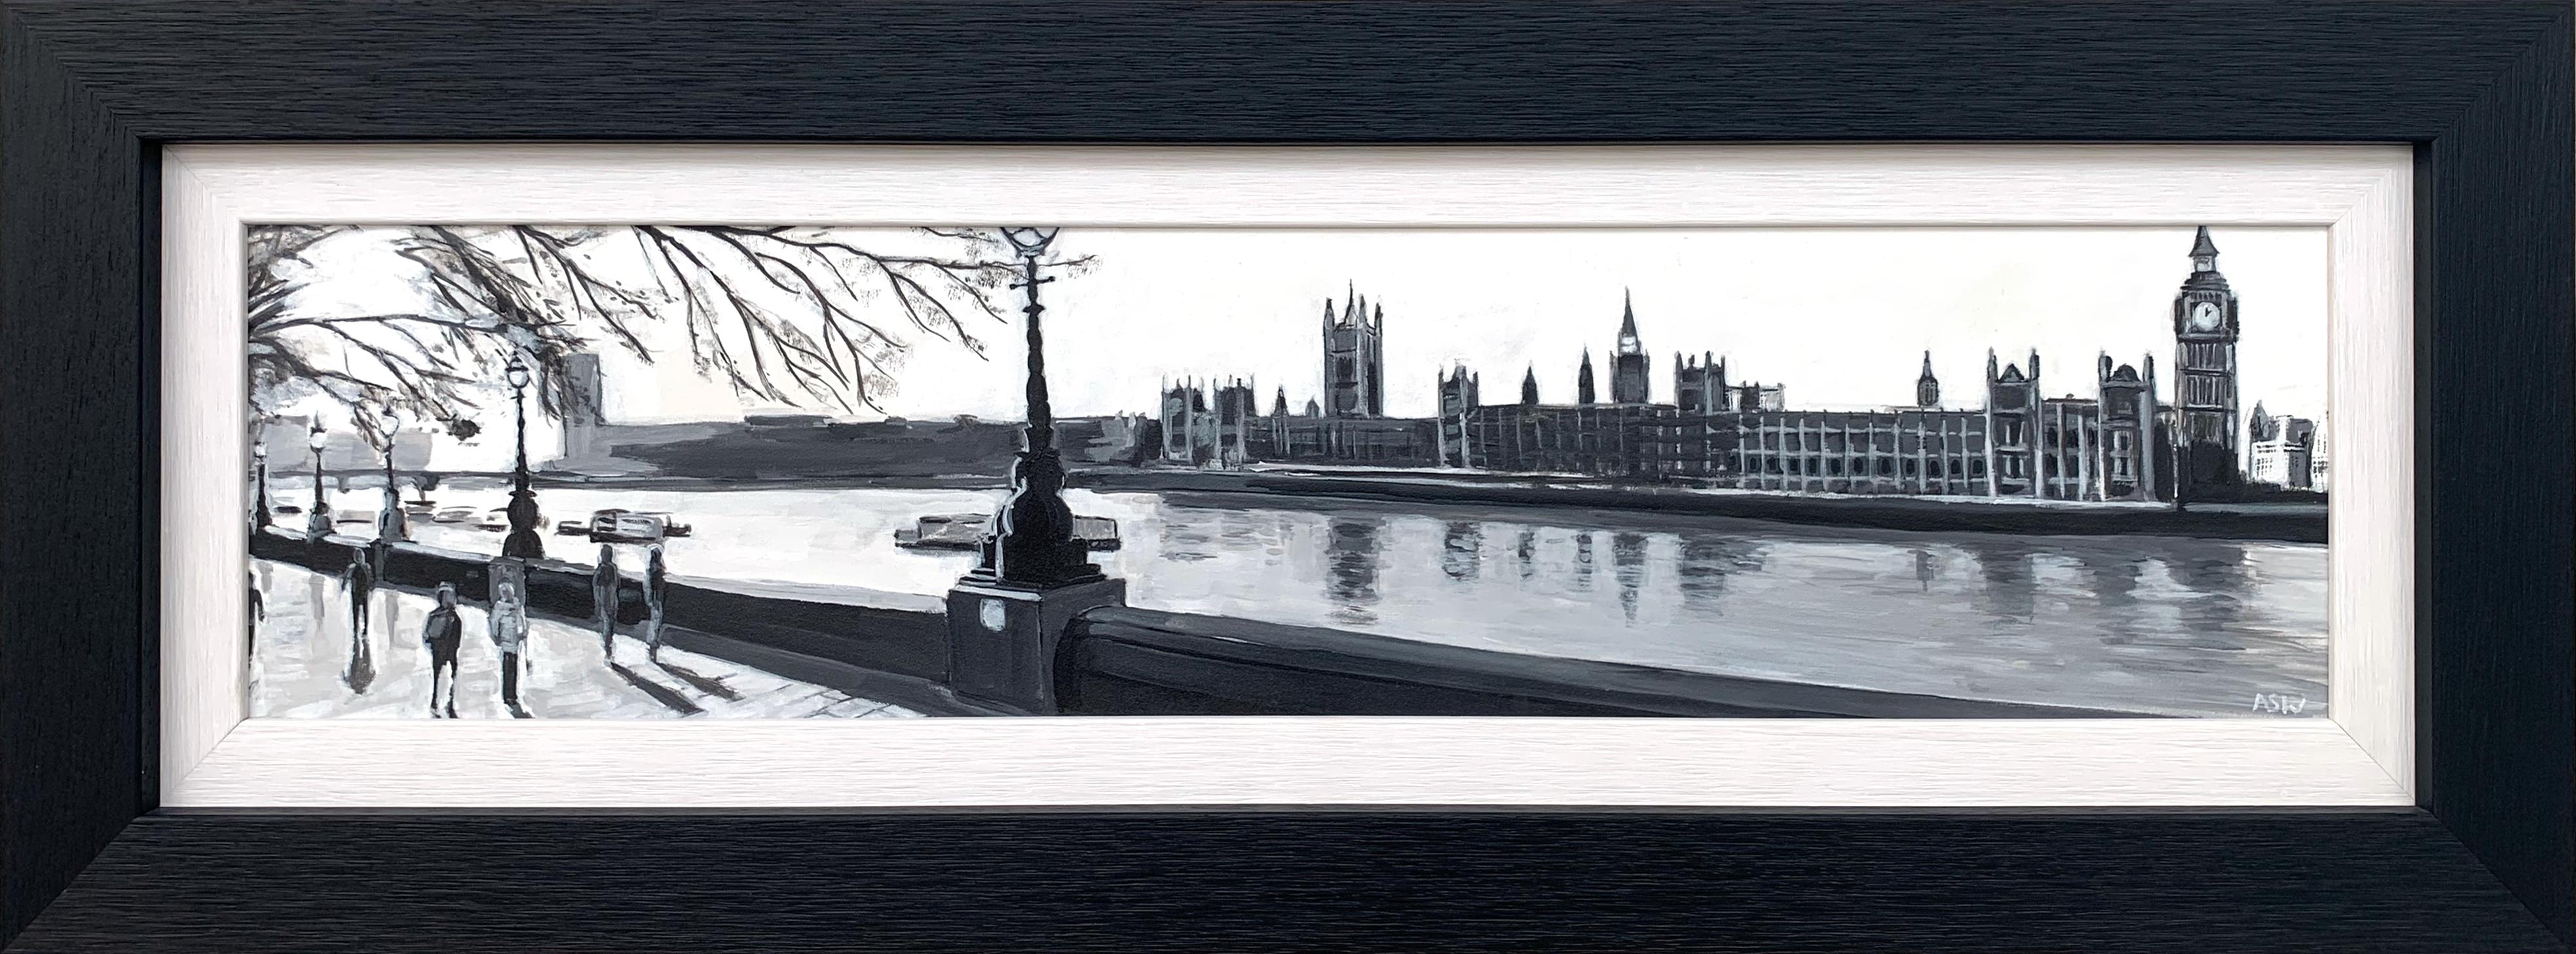 Panoramik-Gemälde in Schwarz-Weiß von Westminster Victoria Embankment London City